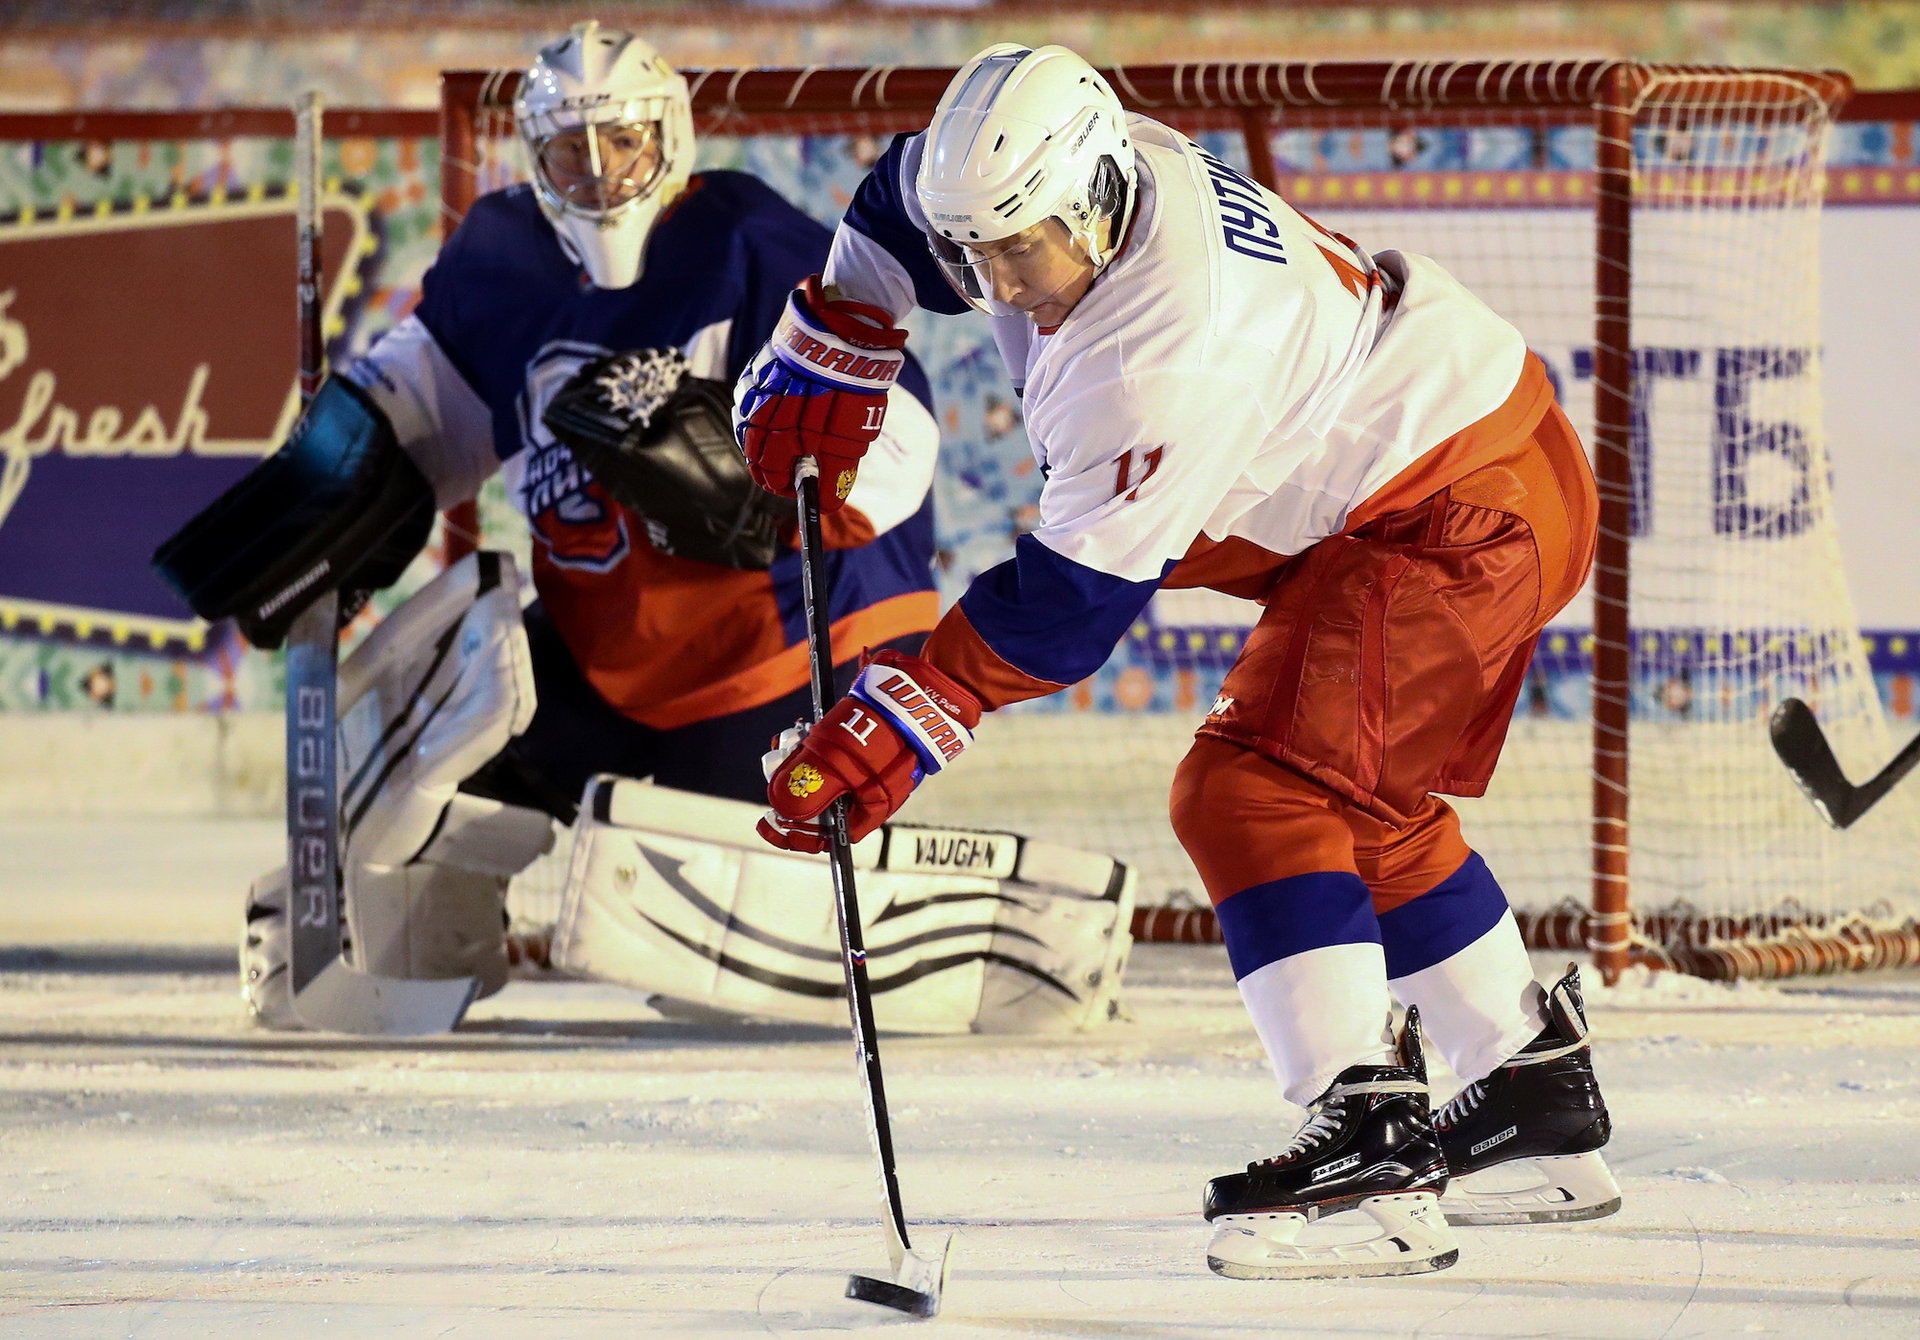 Tổng thống Nga Vladimir Putin ghi bàn trong trận đấu hockey, góp phần giúp đội nhà giành thắng lợi